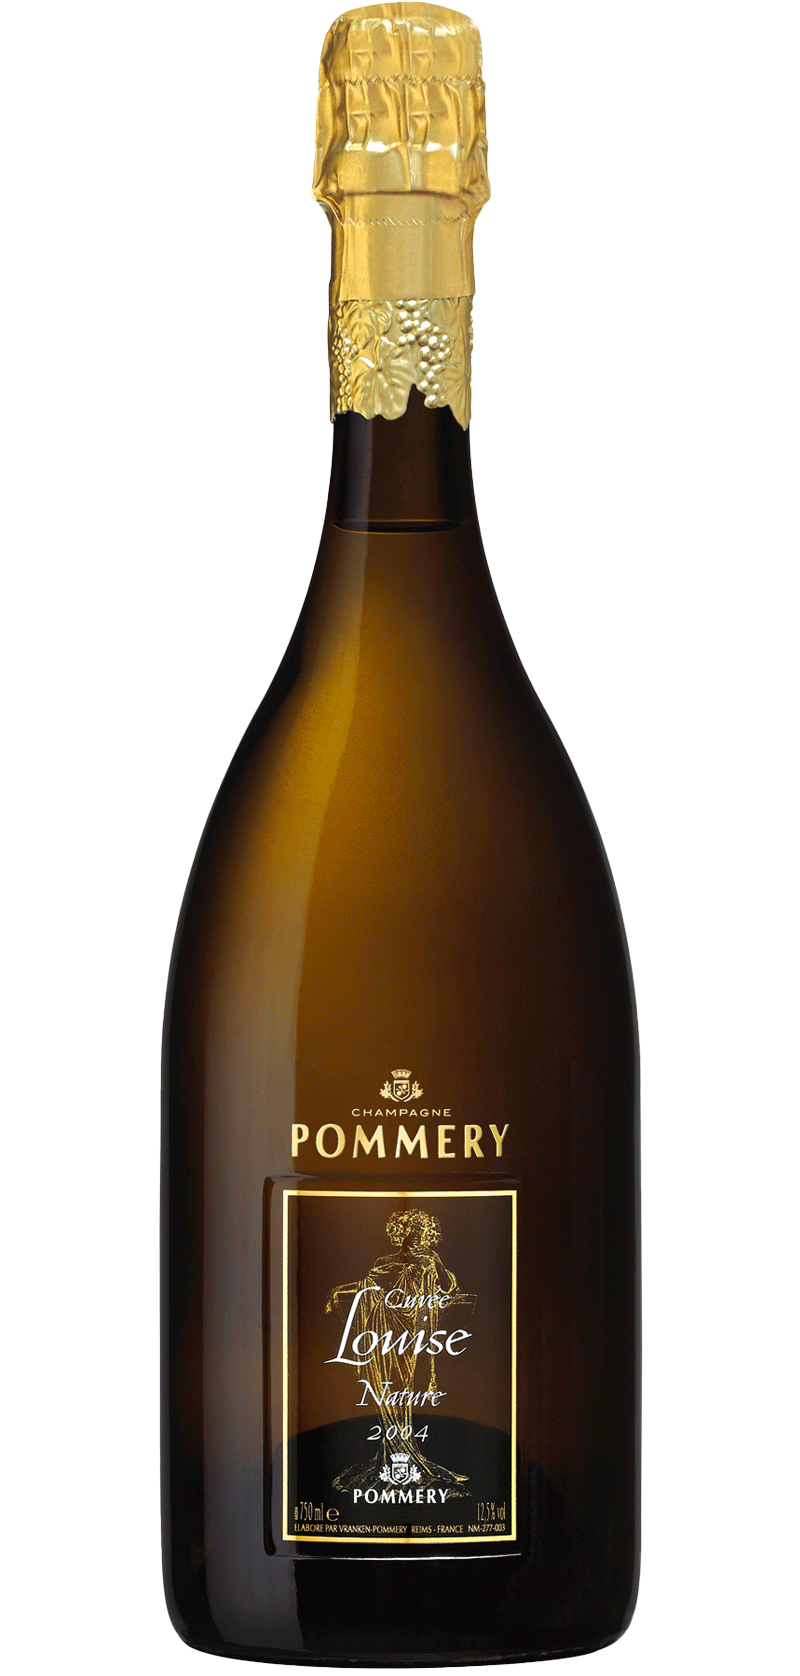 Pommery - Cuvée Louise Nature Millésimée 2004 - Champagne